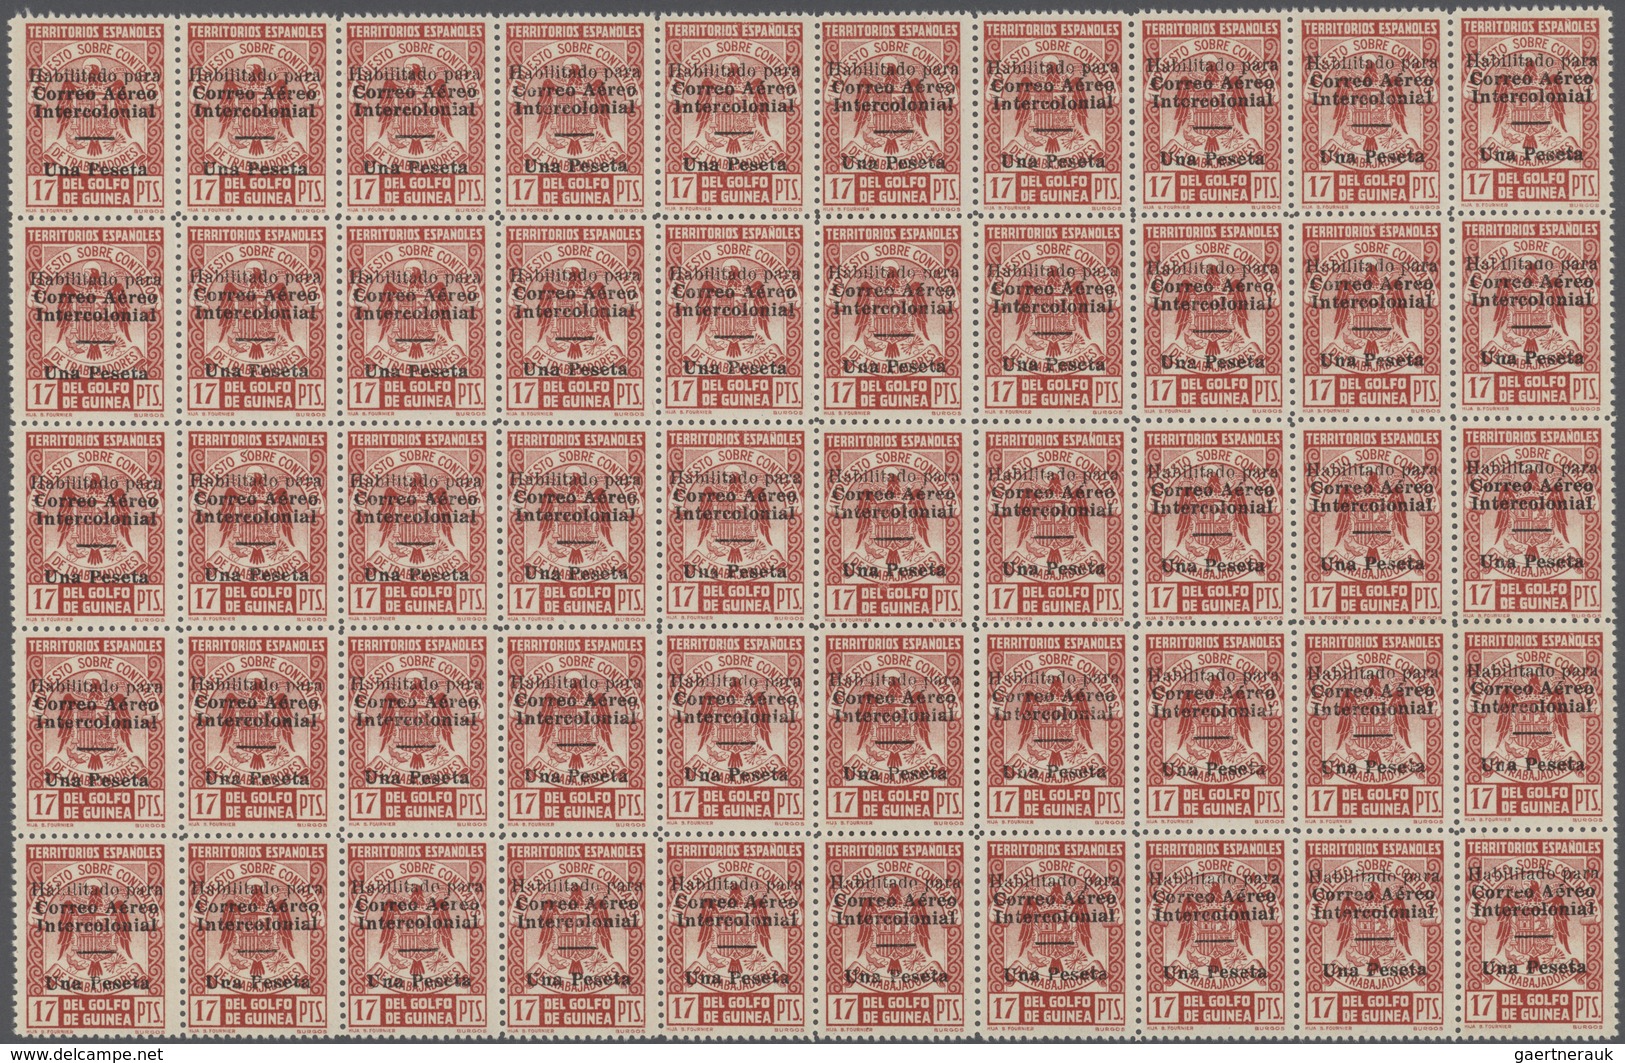 Spanische Besitzungen Im Golf Von Guinea: 1941, Fiscal Stamp 17pta. Carmine Used As Definitive Issue - Guinea Espagnole